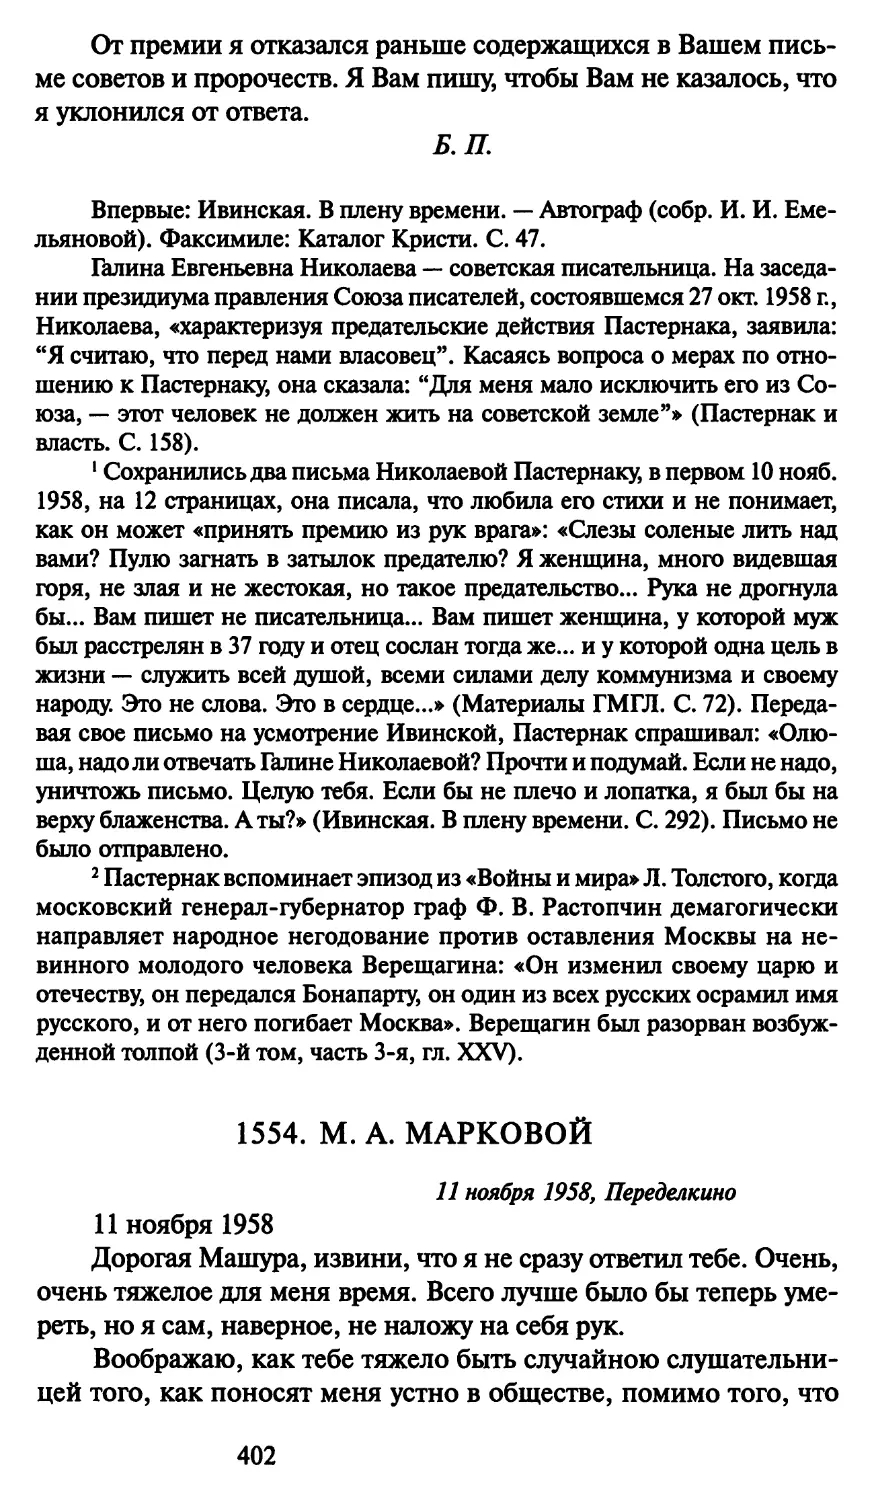 1554. М. А. Марковой и ноября 1958